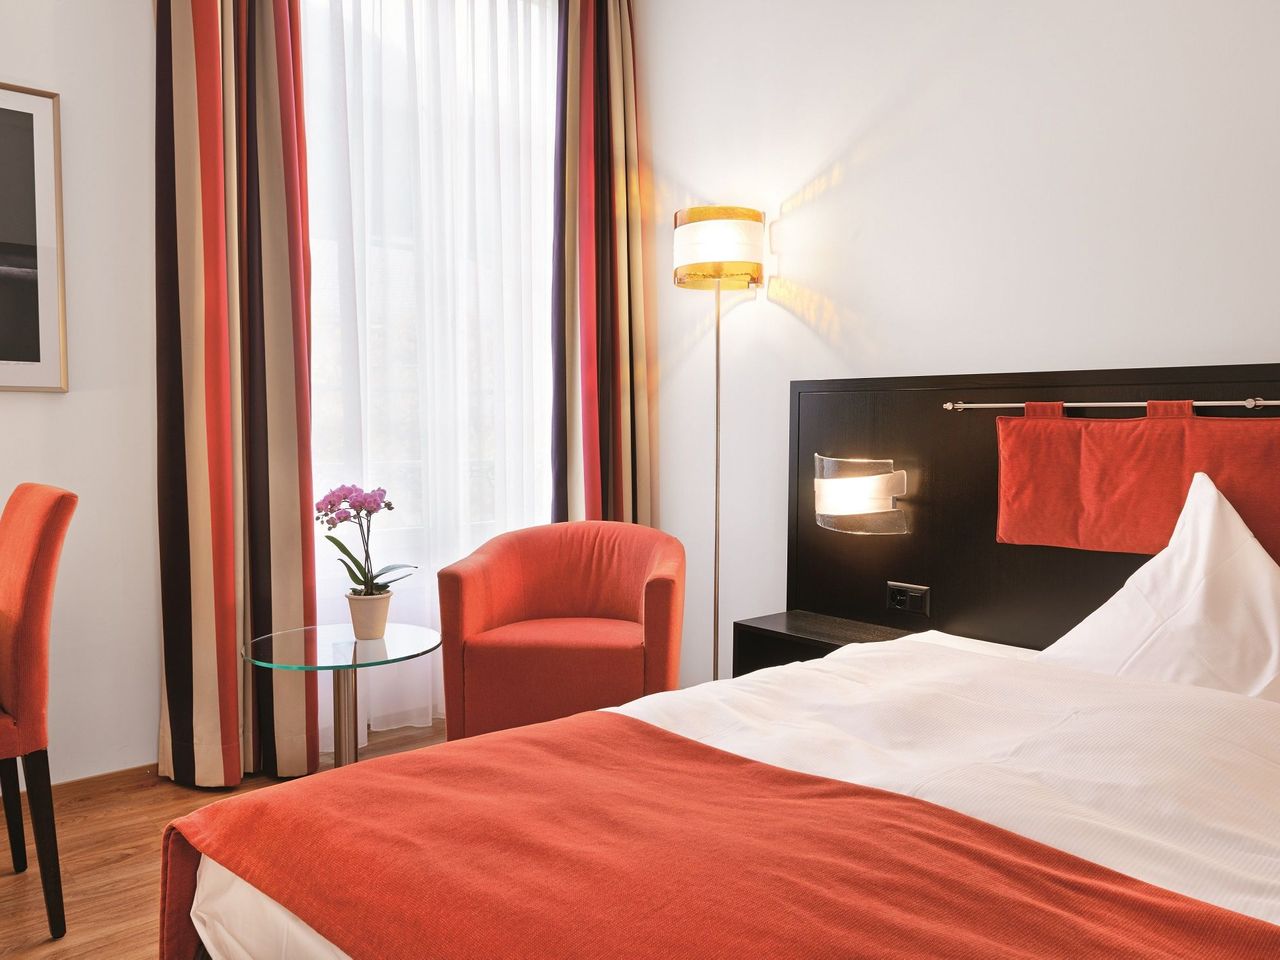 6 Tage Schweiz entdecken im Sorell Hotel Tamina